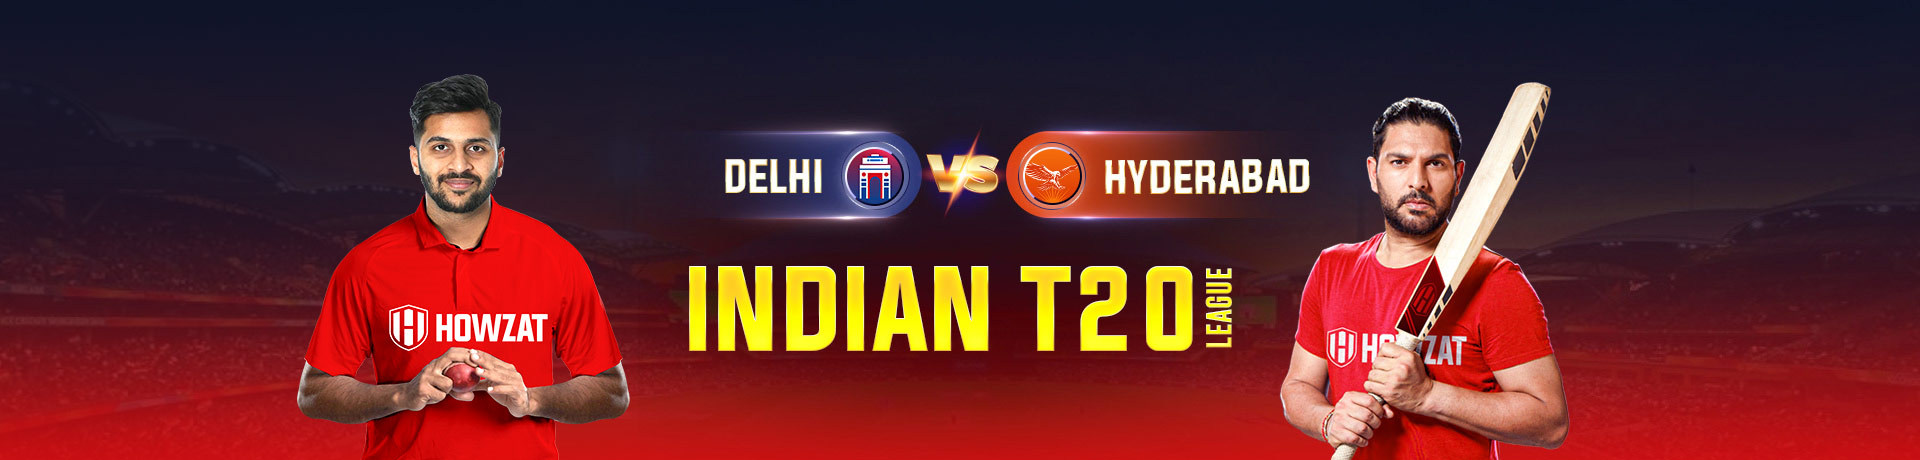 Delhi vs Hyderabad  Indian T20 League